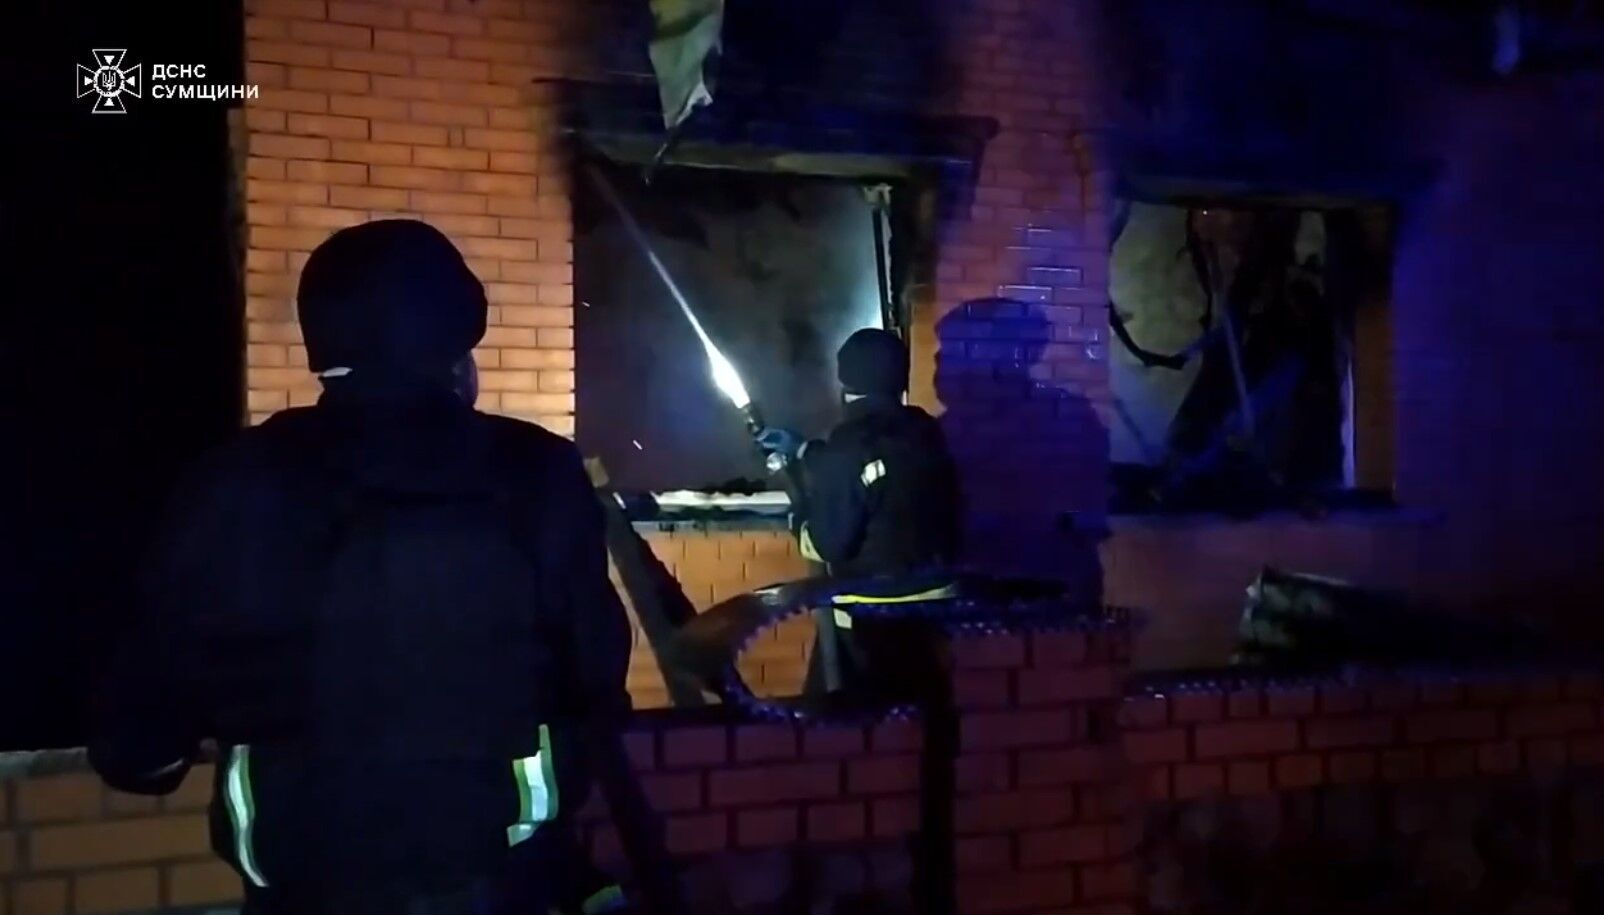 На Сумщине спасатели ликвидировали пожар после обстрела РФ. Видео